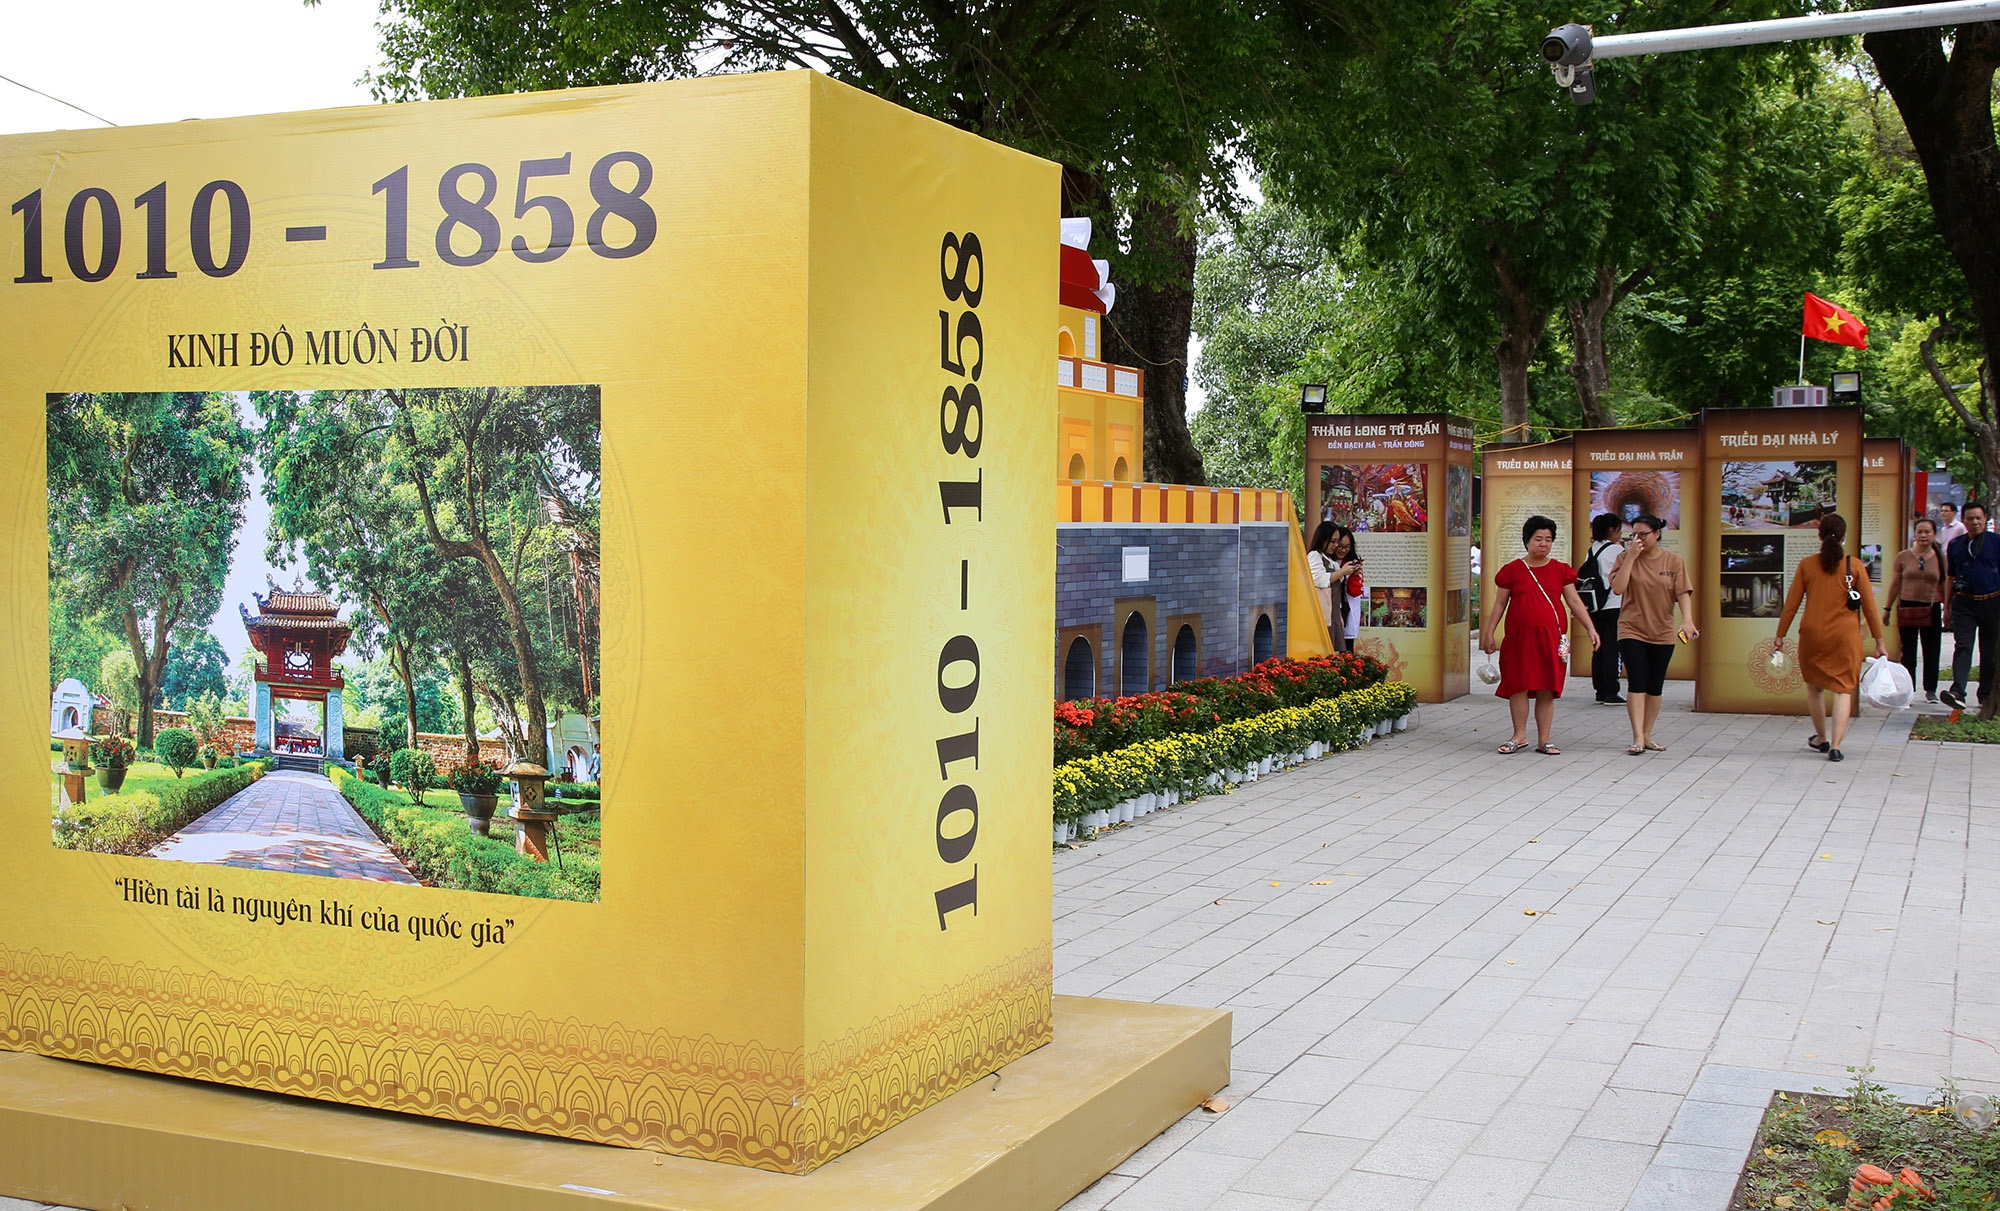 Hà Nội trang trí đường phố kỉ niệm 1010 năm Thăng Long - Hà Nội - 6